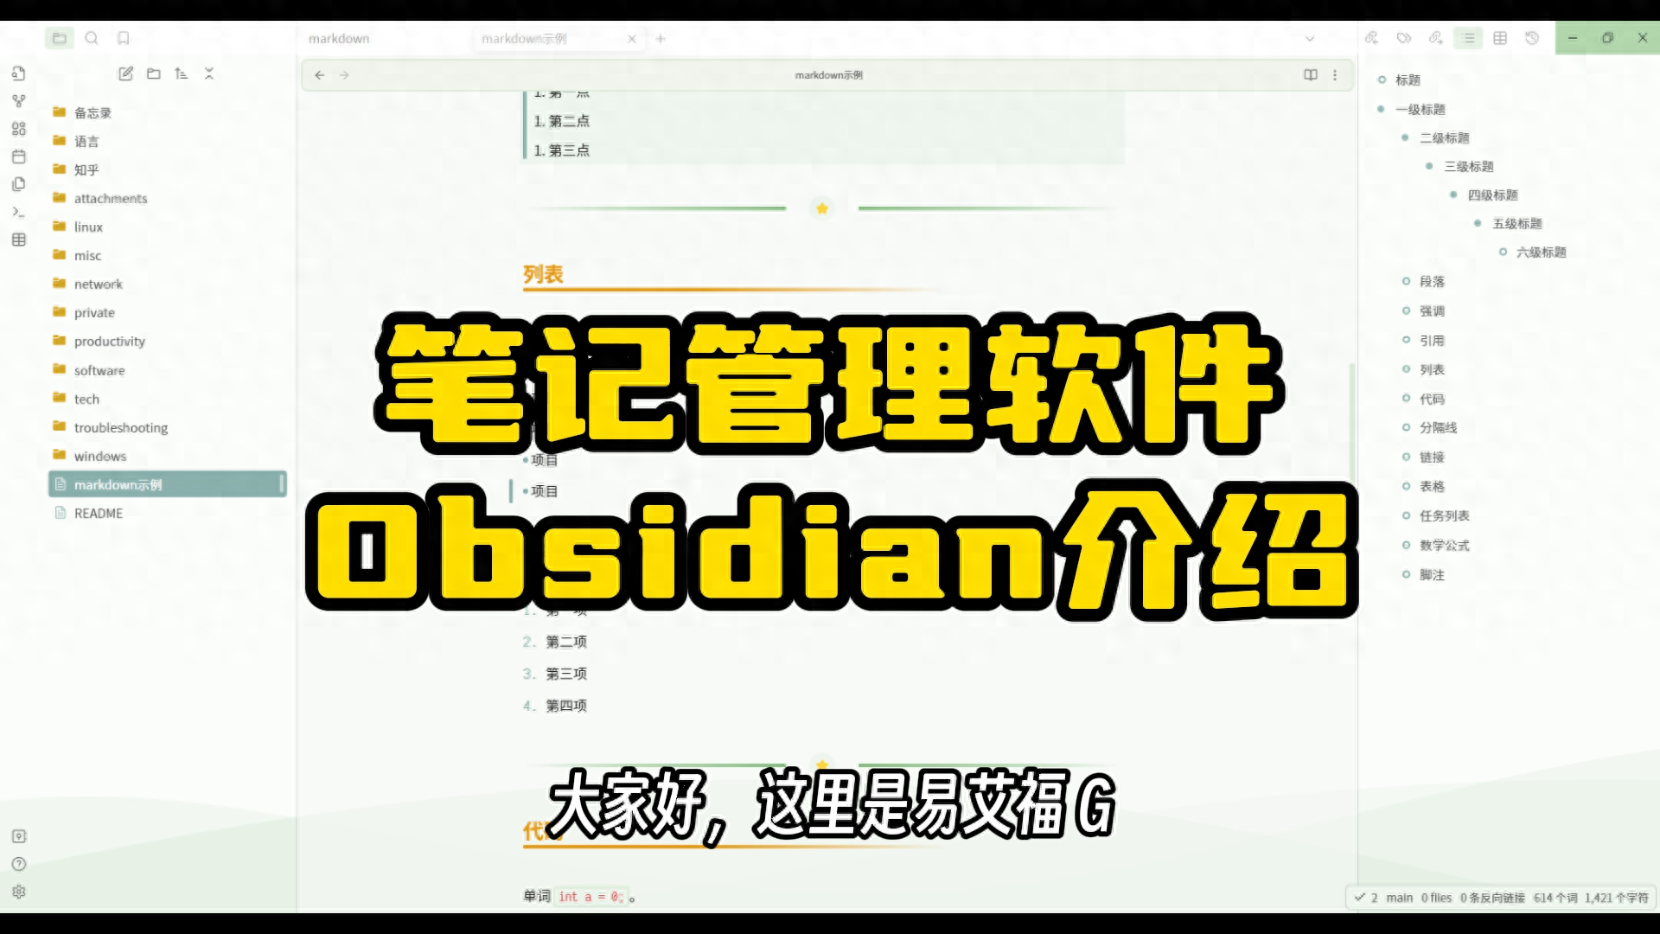 GA黄金甲体育笔记管理软件Obsidian介绍